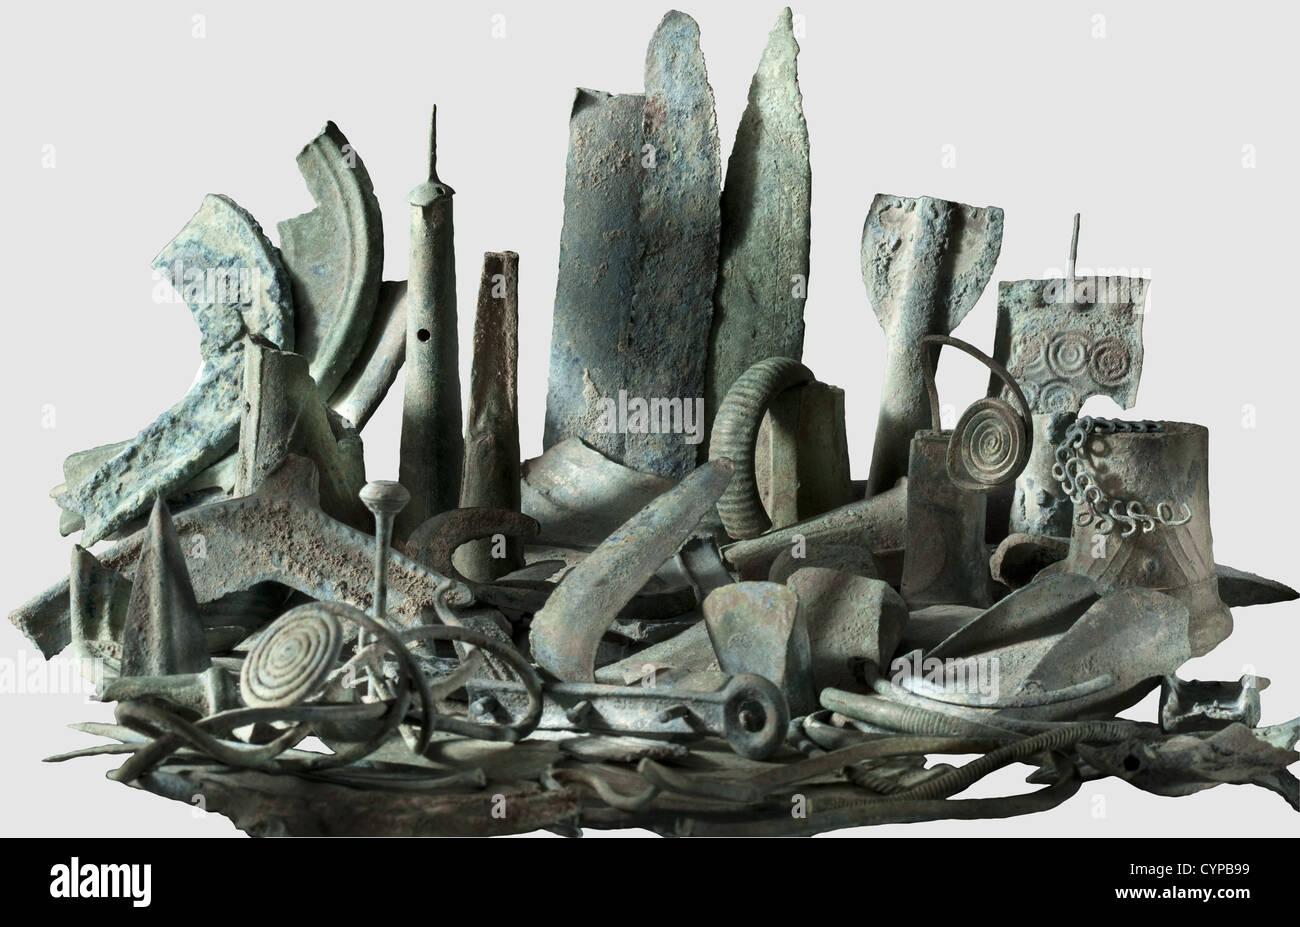 Ein bronzezeitlicher Fund, Zentraldonaugebiet, 1300 - 1100 v. Chr. bestehend aus 142 Teilen (Gewicht: Ca. 5 kg). 35 Fragmente von Schwertern, Dolchen und Sägen,35 Fragmente von Sicheln,17 Fragmente von Äxten,3 Fragmente von Lanzen,7 Fragmente von Messern,12 Stücke von Armbändern und Ringen,19 Draht Halsringe und Teile von Ringen,2 Nadeln,6 Teile von Anhängern und Teller(teilweise verziert),1 Draht einer Fibel und 15 Tutuli,Knöpfe und Fragmente von Hüllen. Ausgezeichneter Zustand des Metalls mit grün-blauer Oberfläche, in ungereinigtem Zustand finden. Kollektion Axel Guttmann(keine Inve,Zusatz-Rechte-Clearenzen-nicht verfügbar Stockfoto